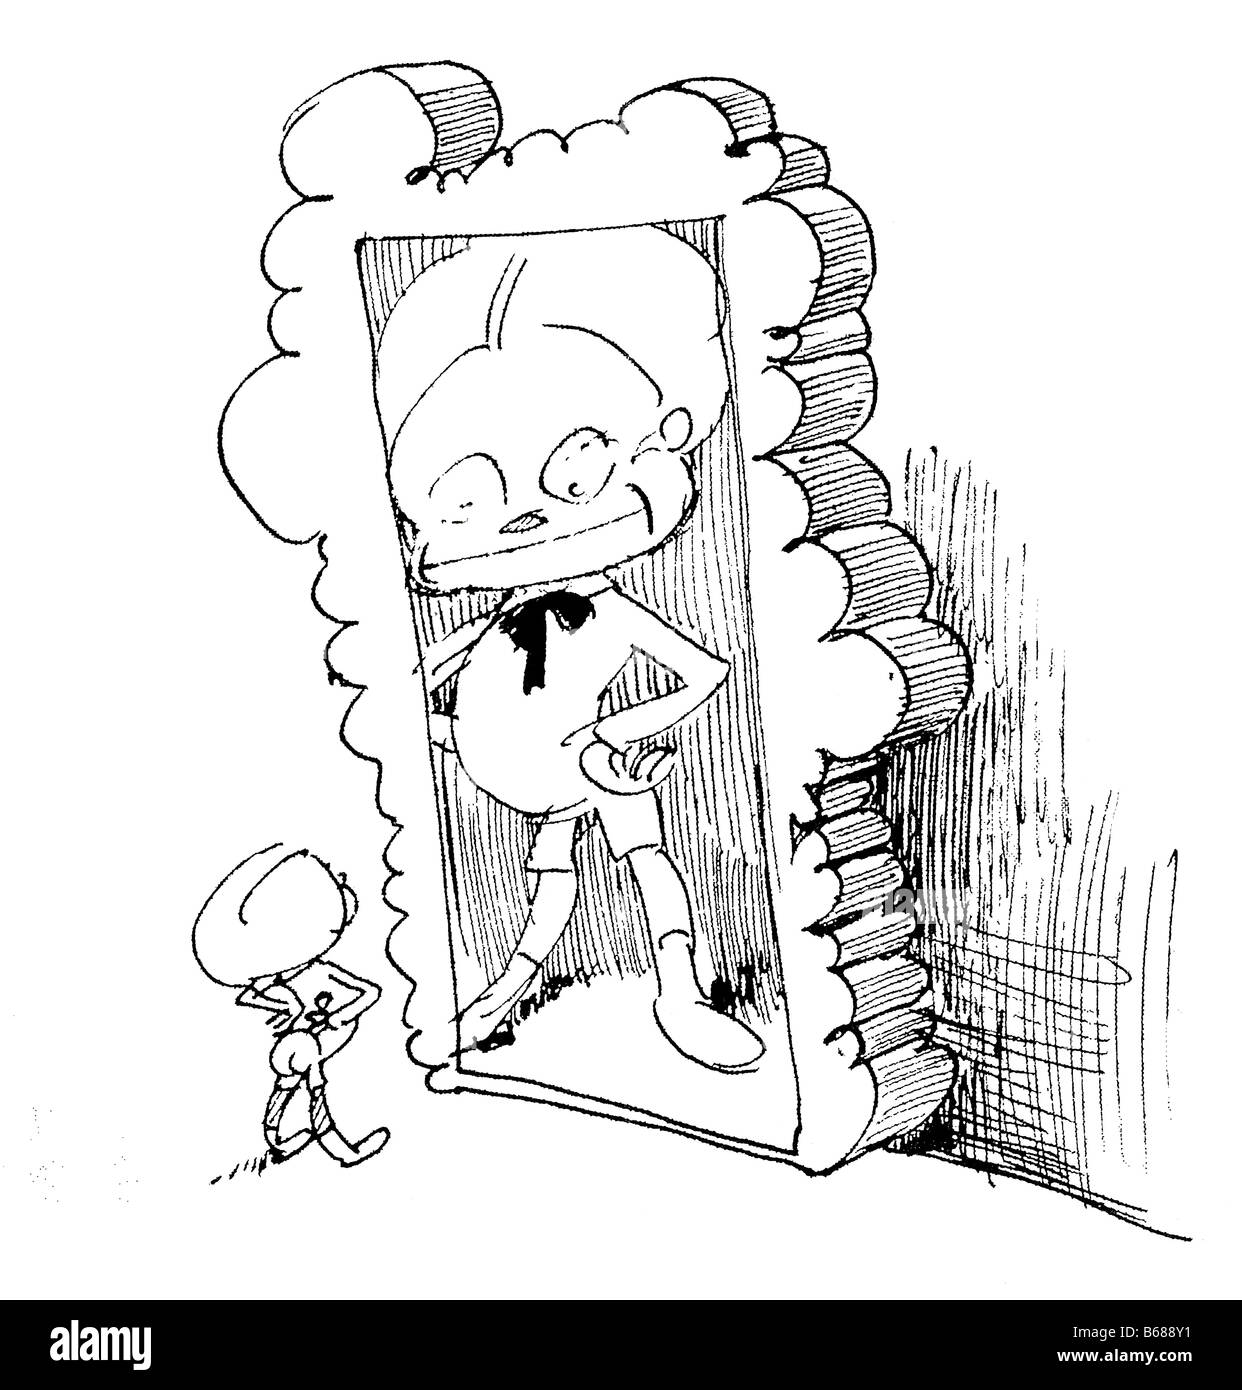 Illustrazione di come un piccolo bambino si guarda allo specchio Foto Stock